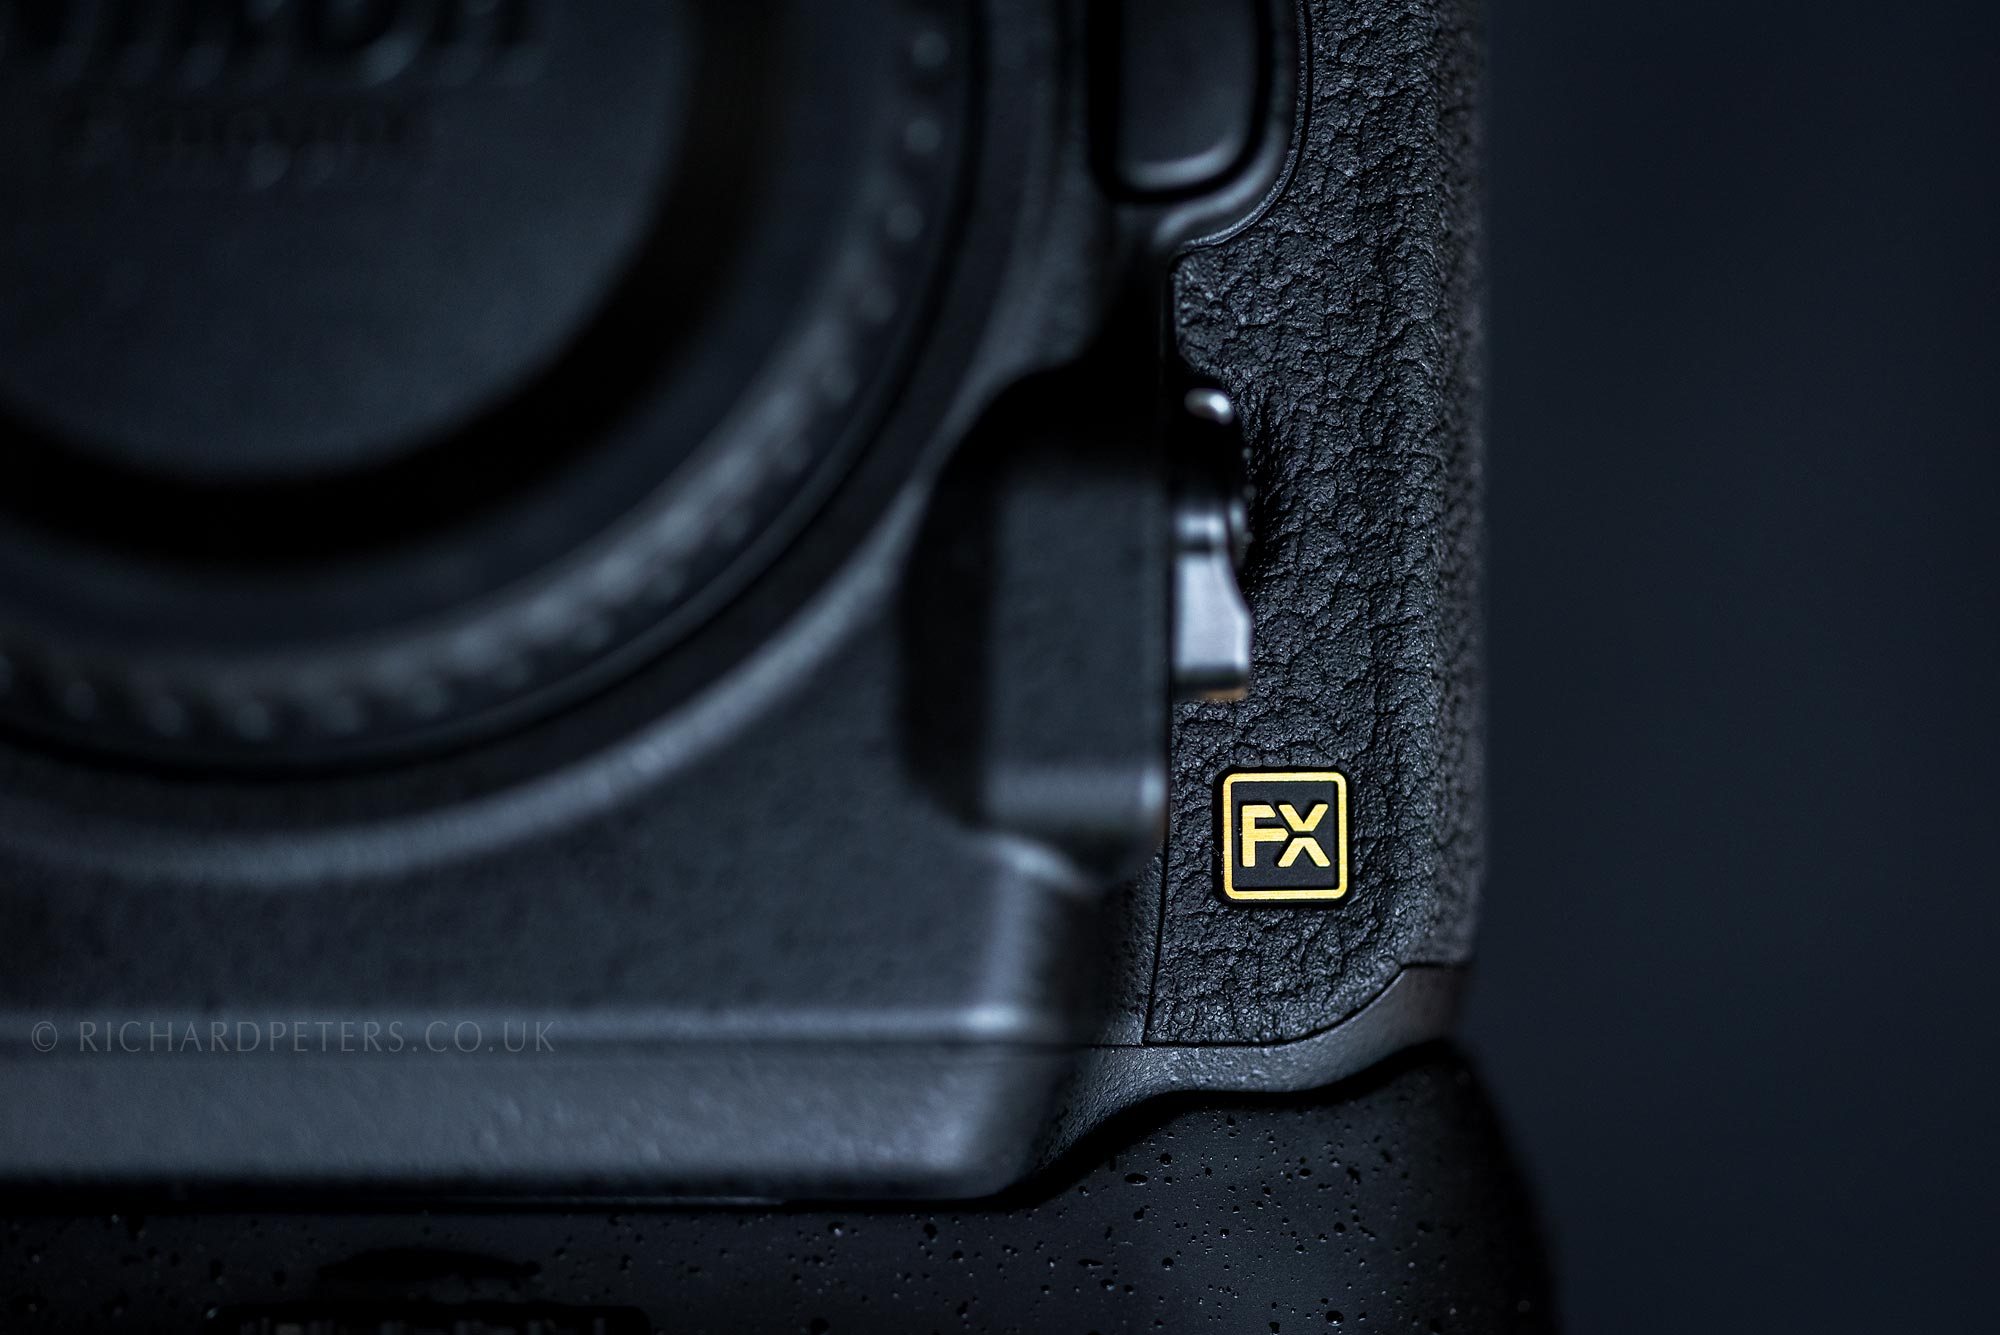 The Nikon D850 FX logo